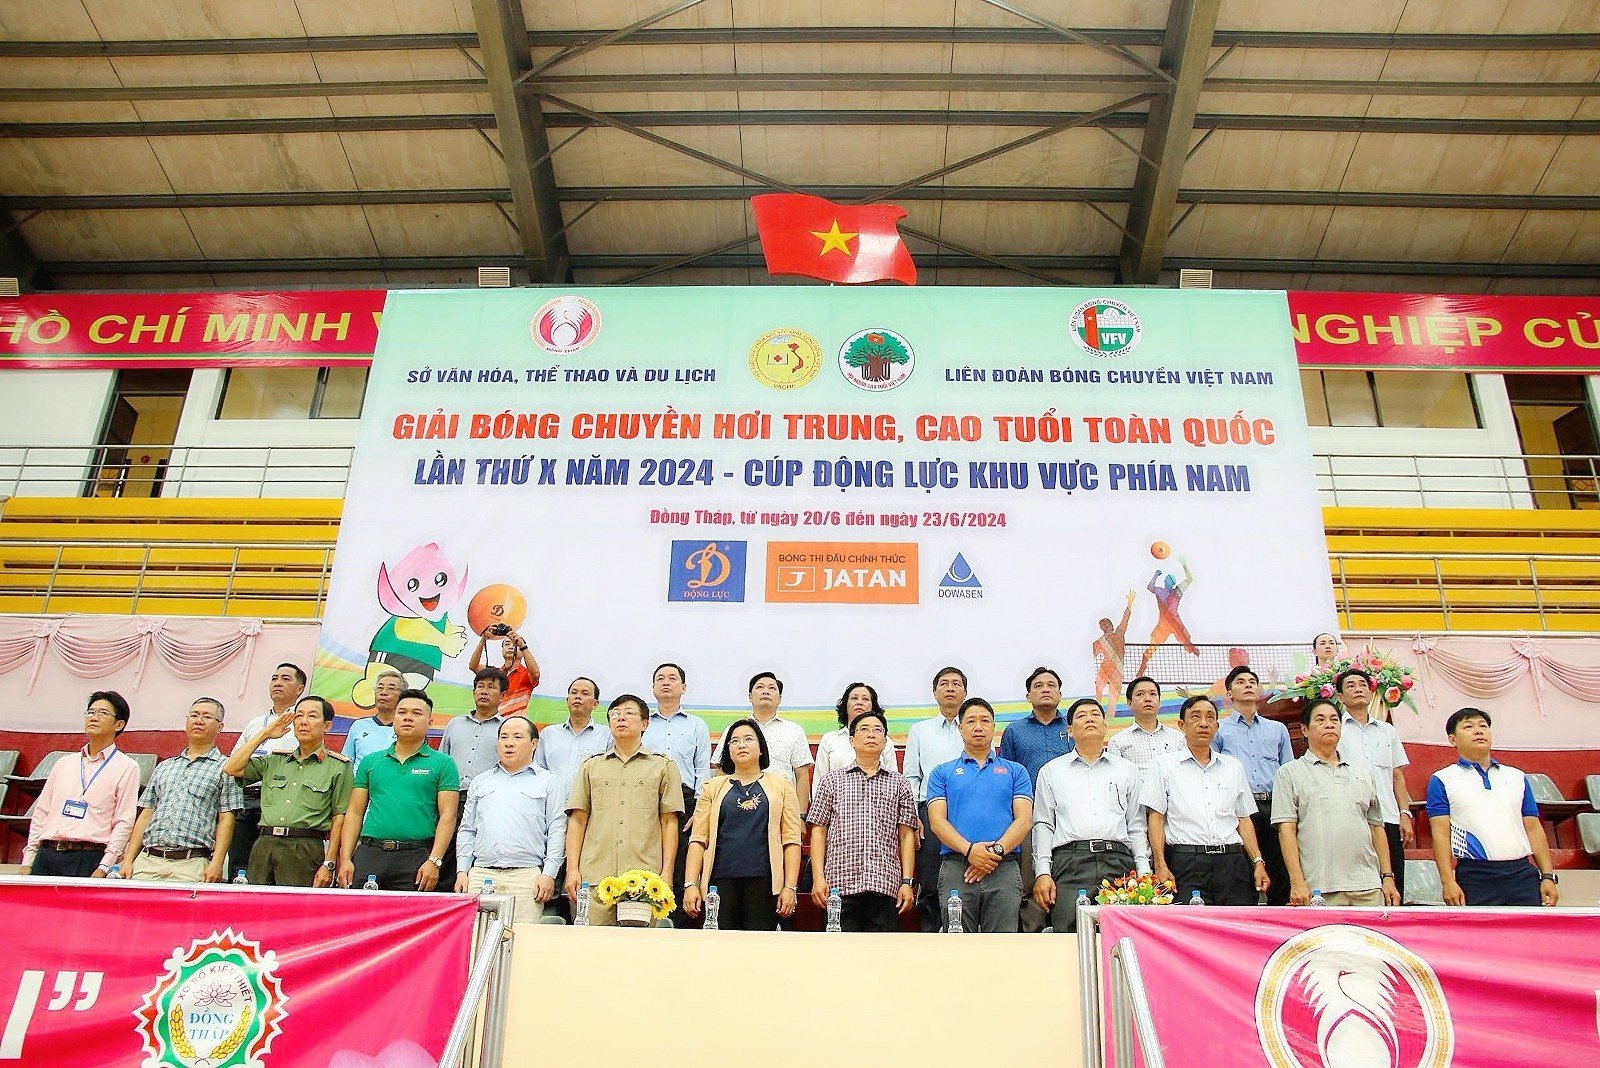 Hội GDCSSKCĐ Việt Nam tham gia tổ chức Giải Bóng chuyền hơi trung, cao tuổi toàn quốc lần thứ X năm 2024 - Cúp Động Lực khu vực phía Nam